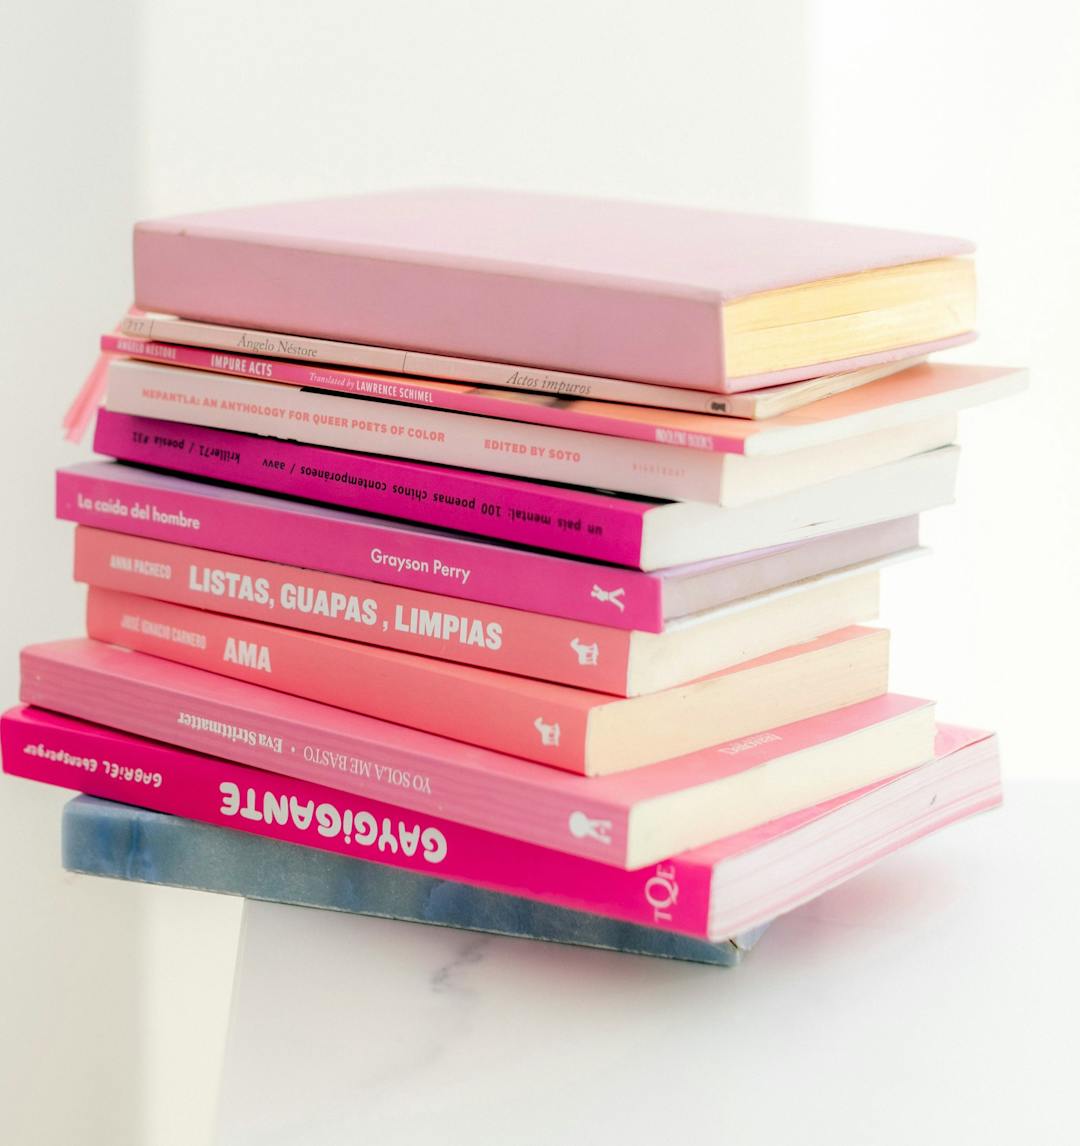 Bunke med rosa/røde bøker på et hvitt bord.